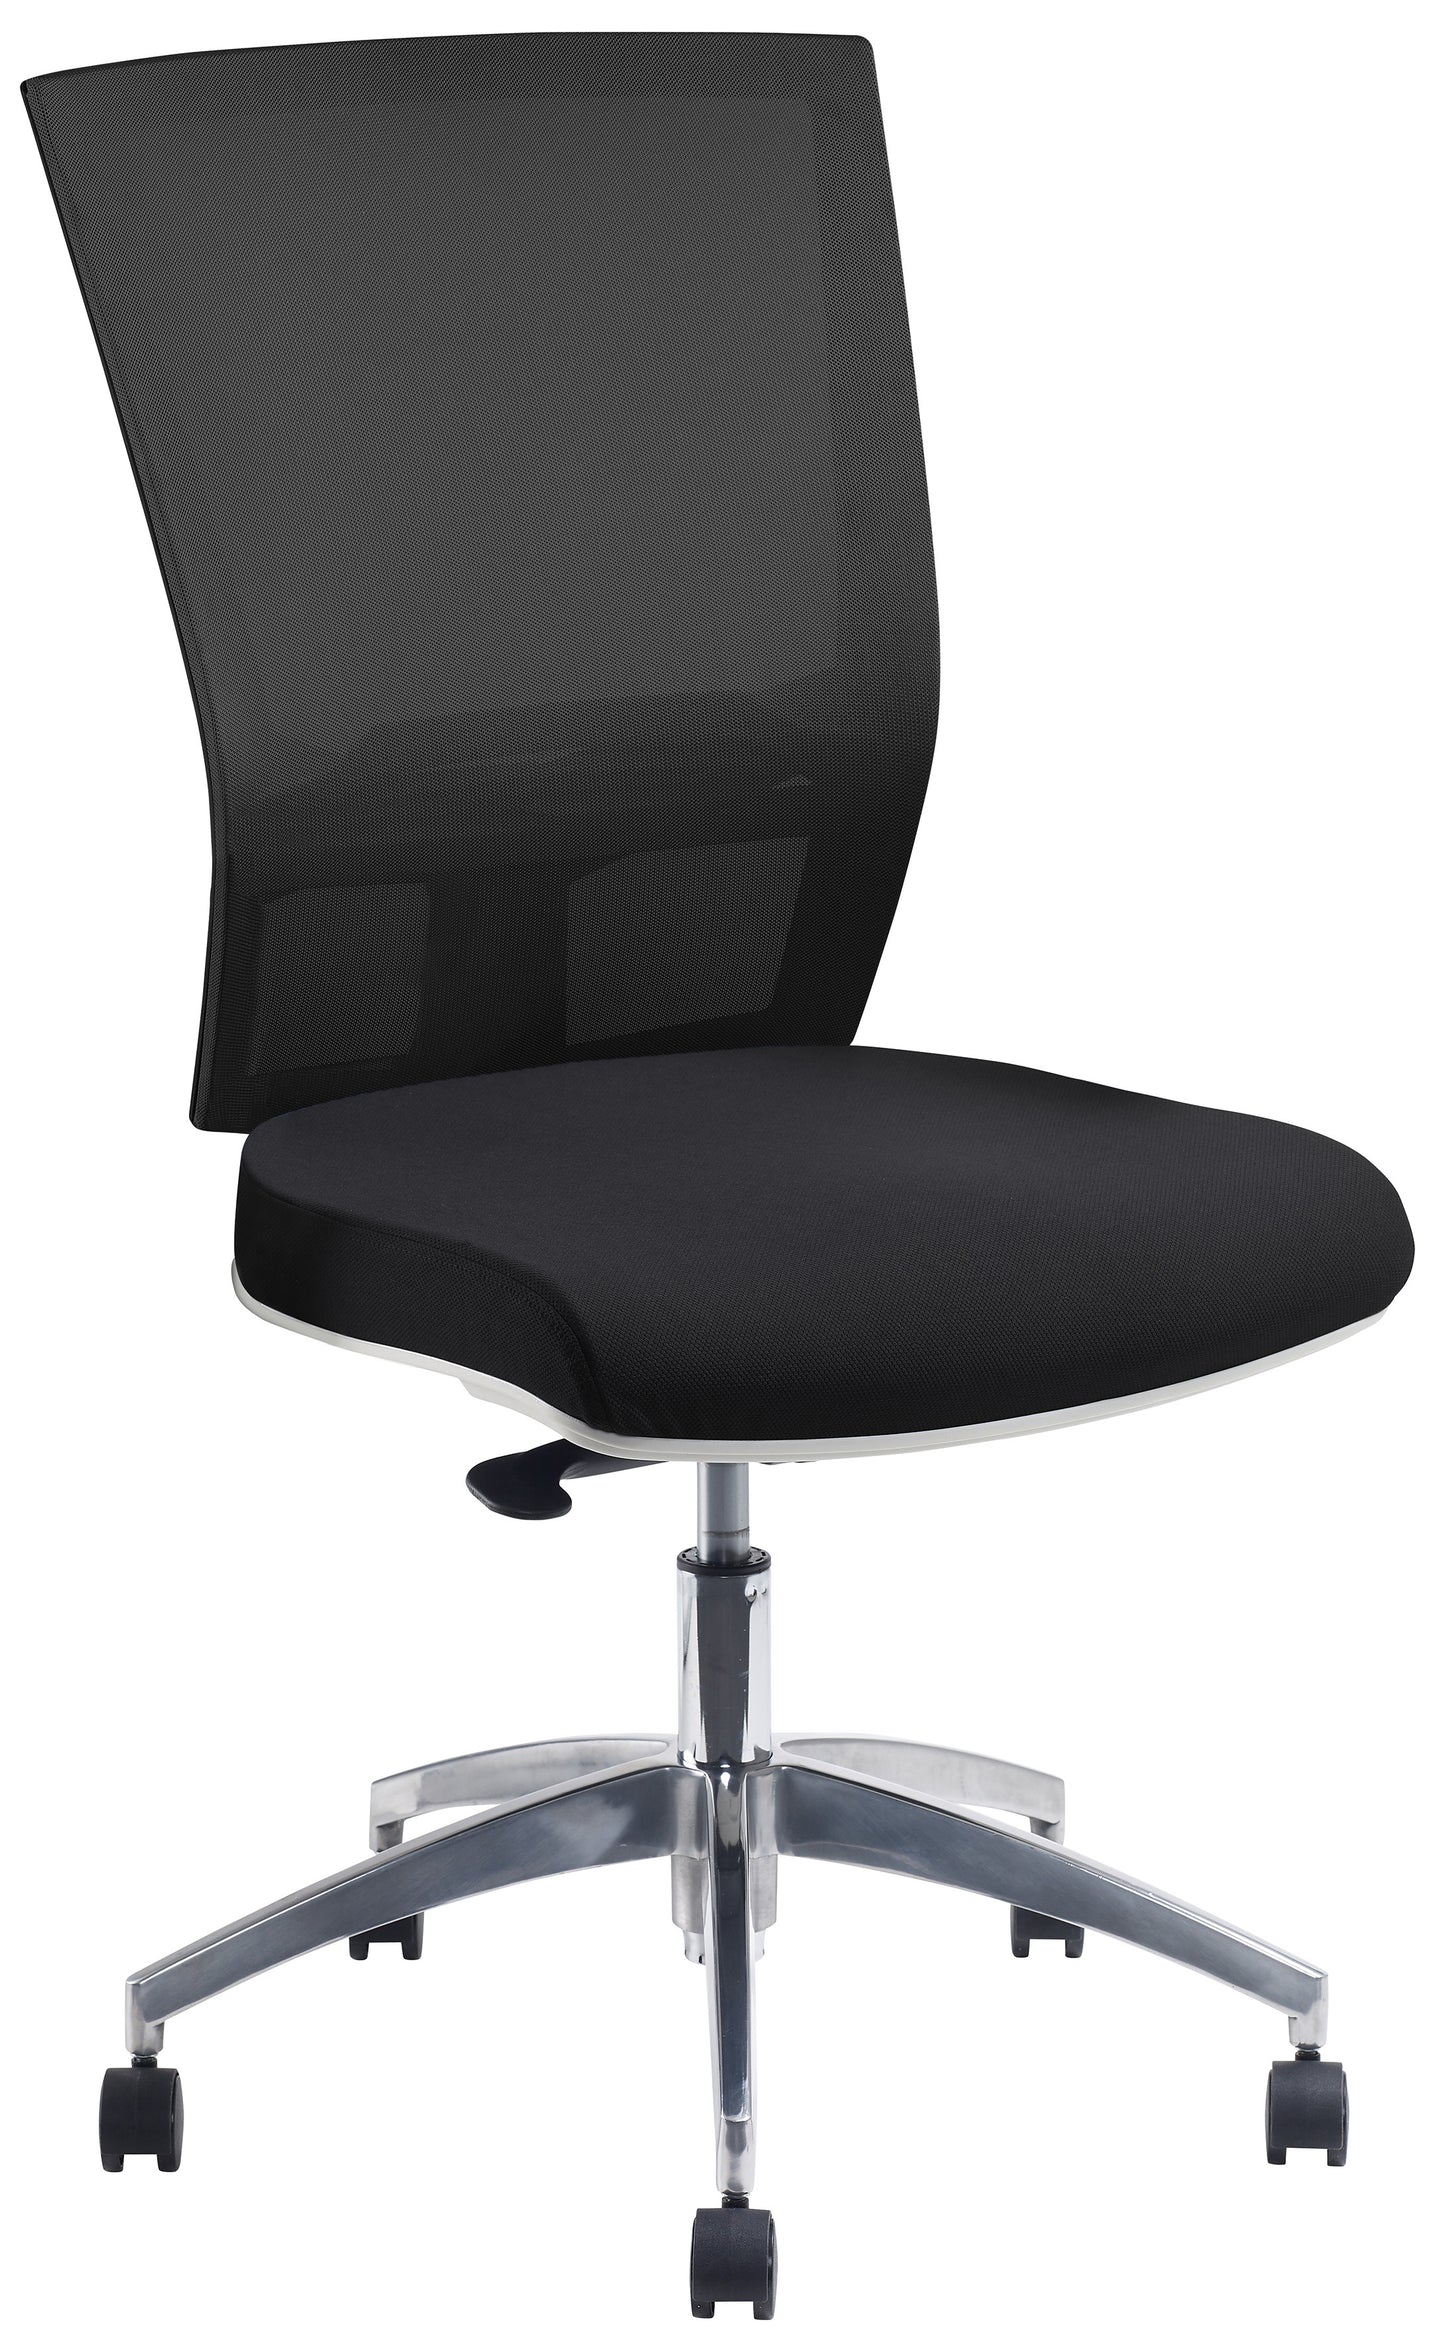 Chair - Advance Air Plus White Frame